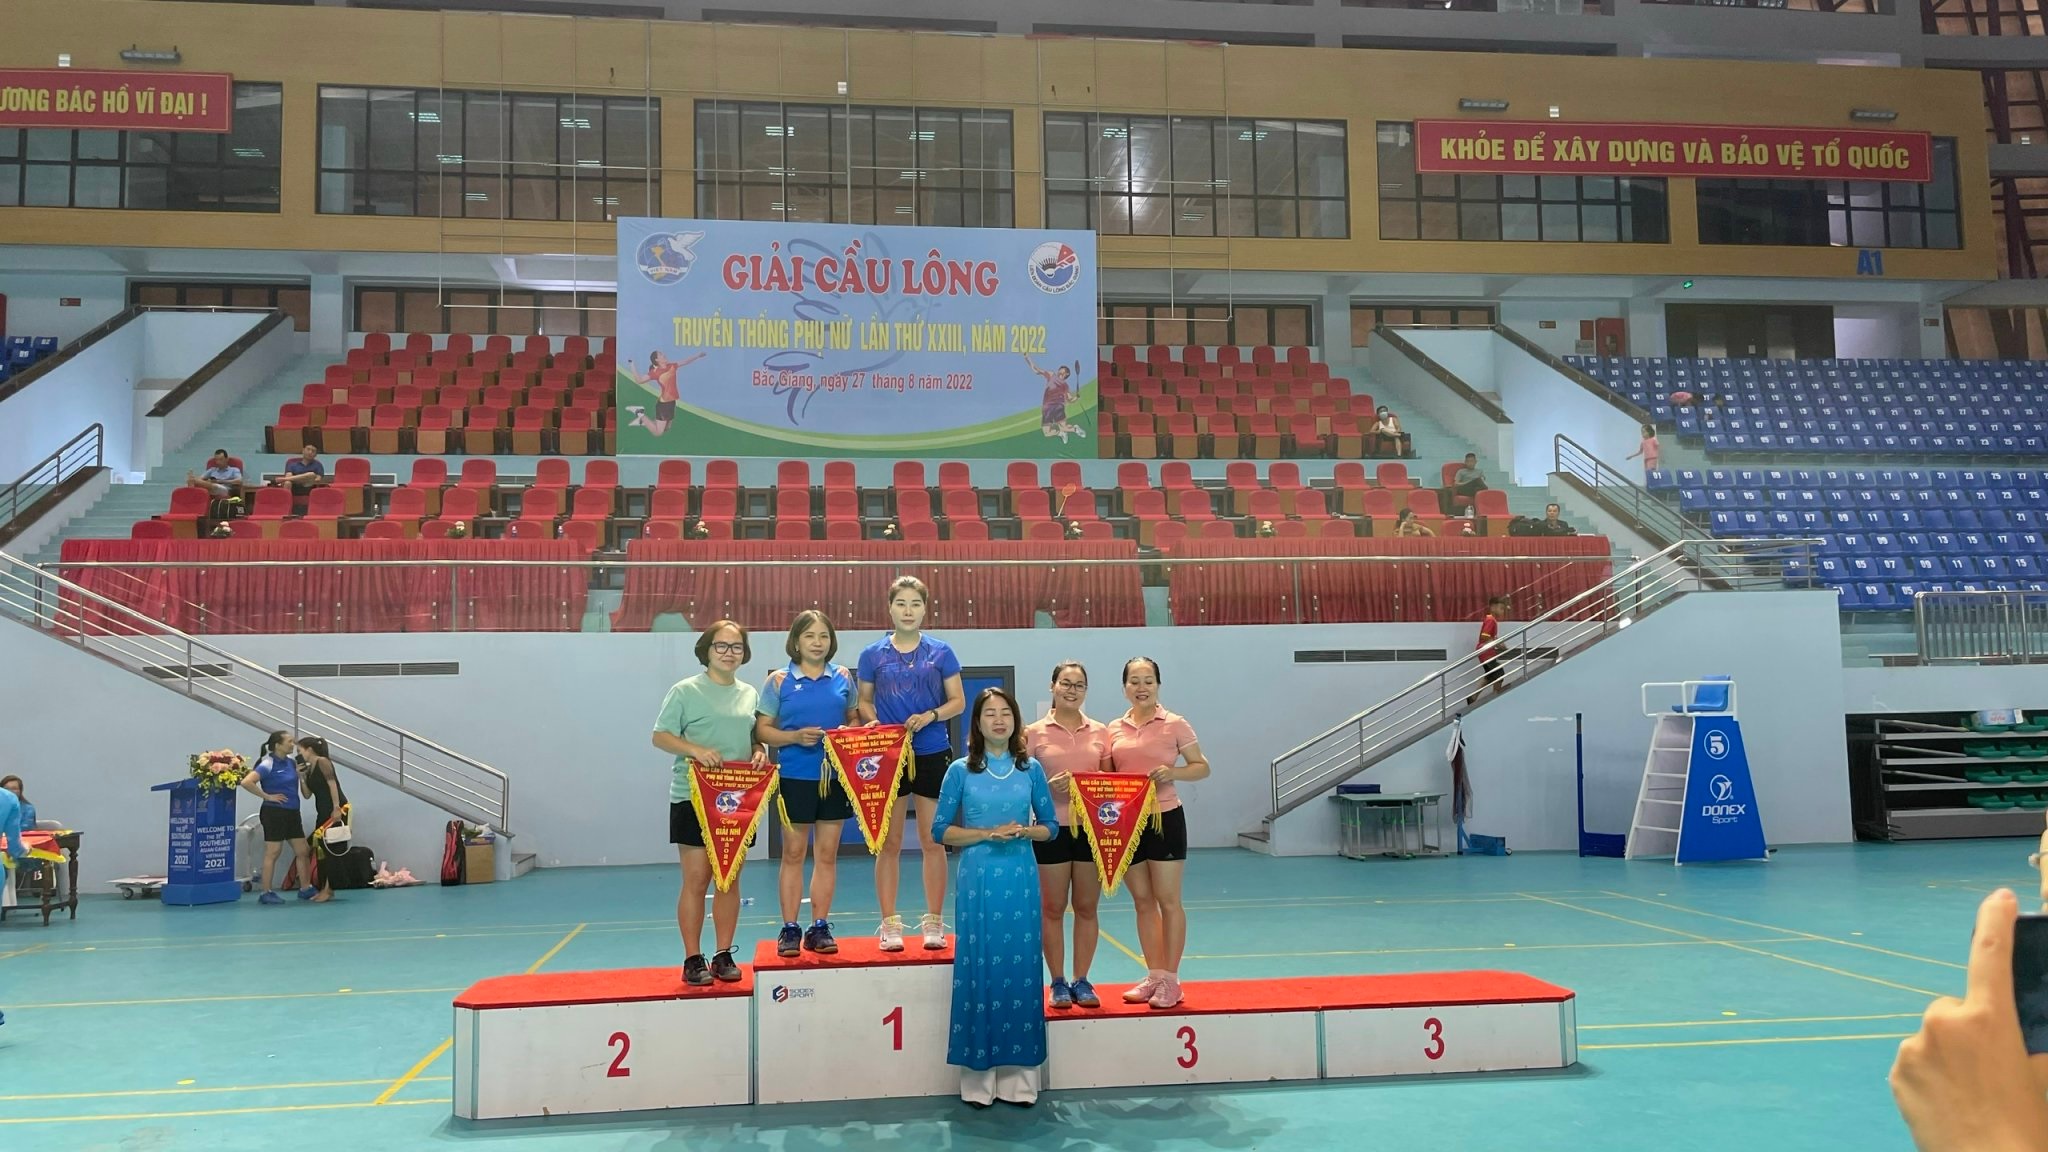 Công đoàn Cục THADS tỉnh Bắc Giang giành giải Ba Giải cầu lông truyền thống phụ nữ tỉnh Bắc Giang năm 2022